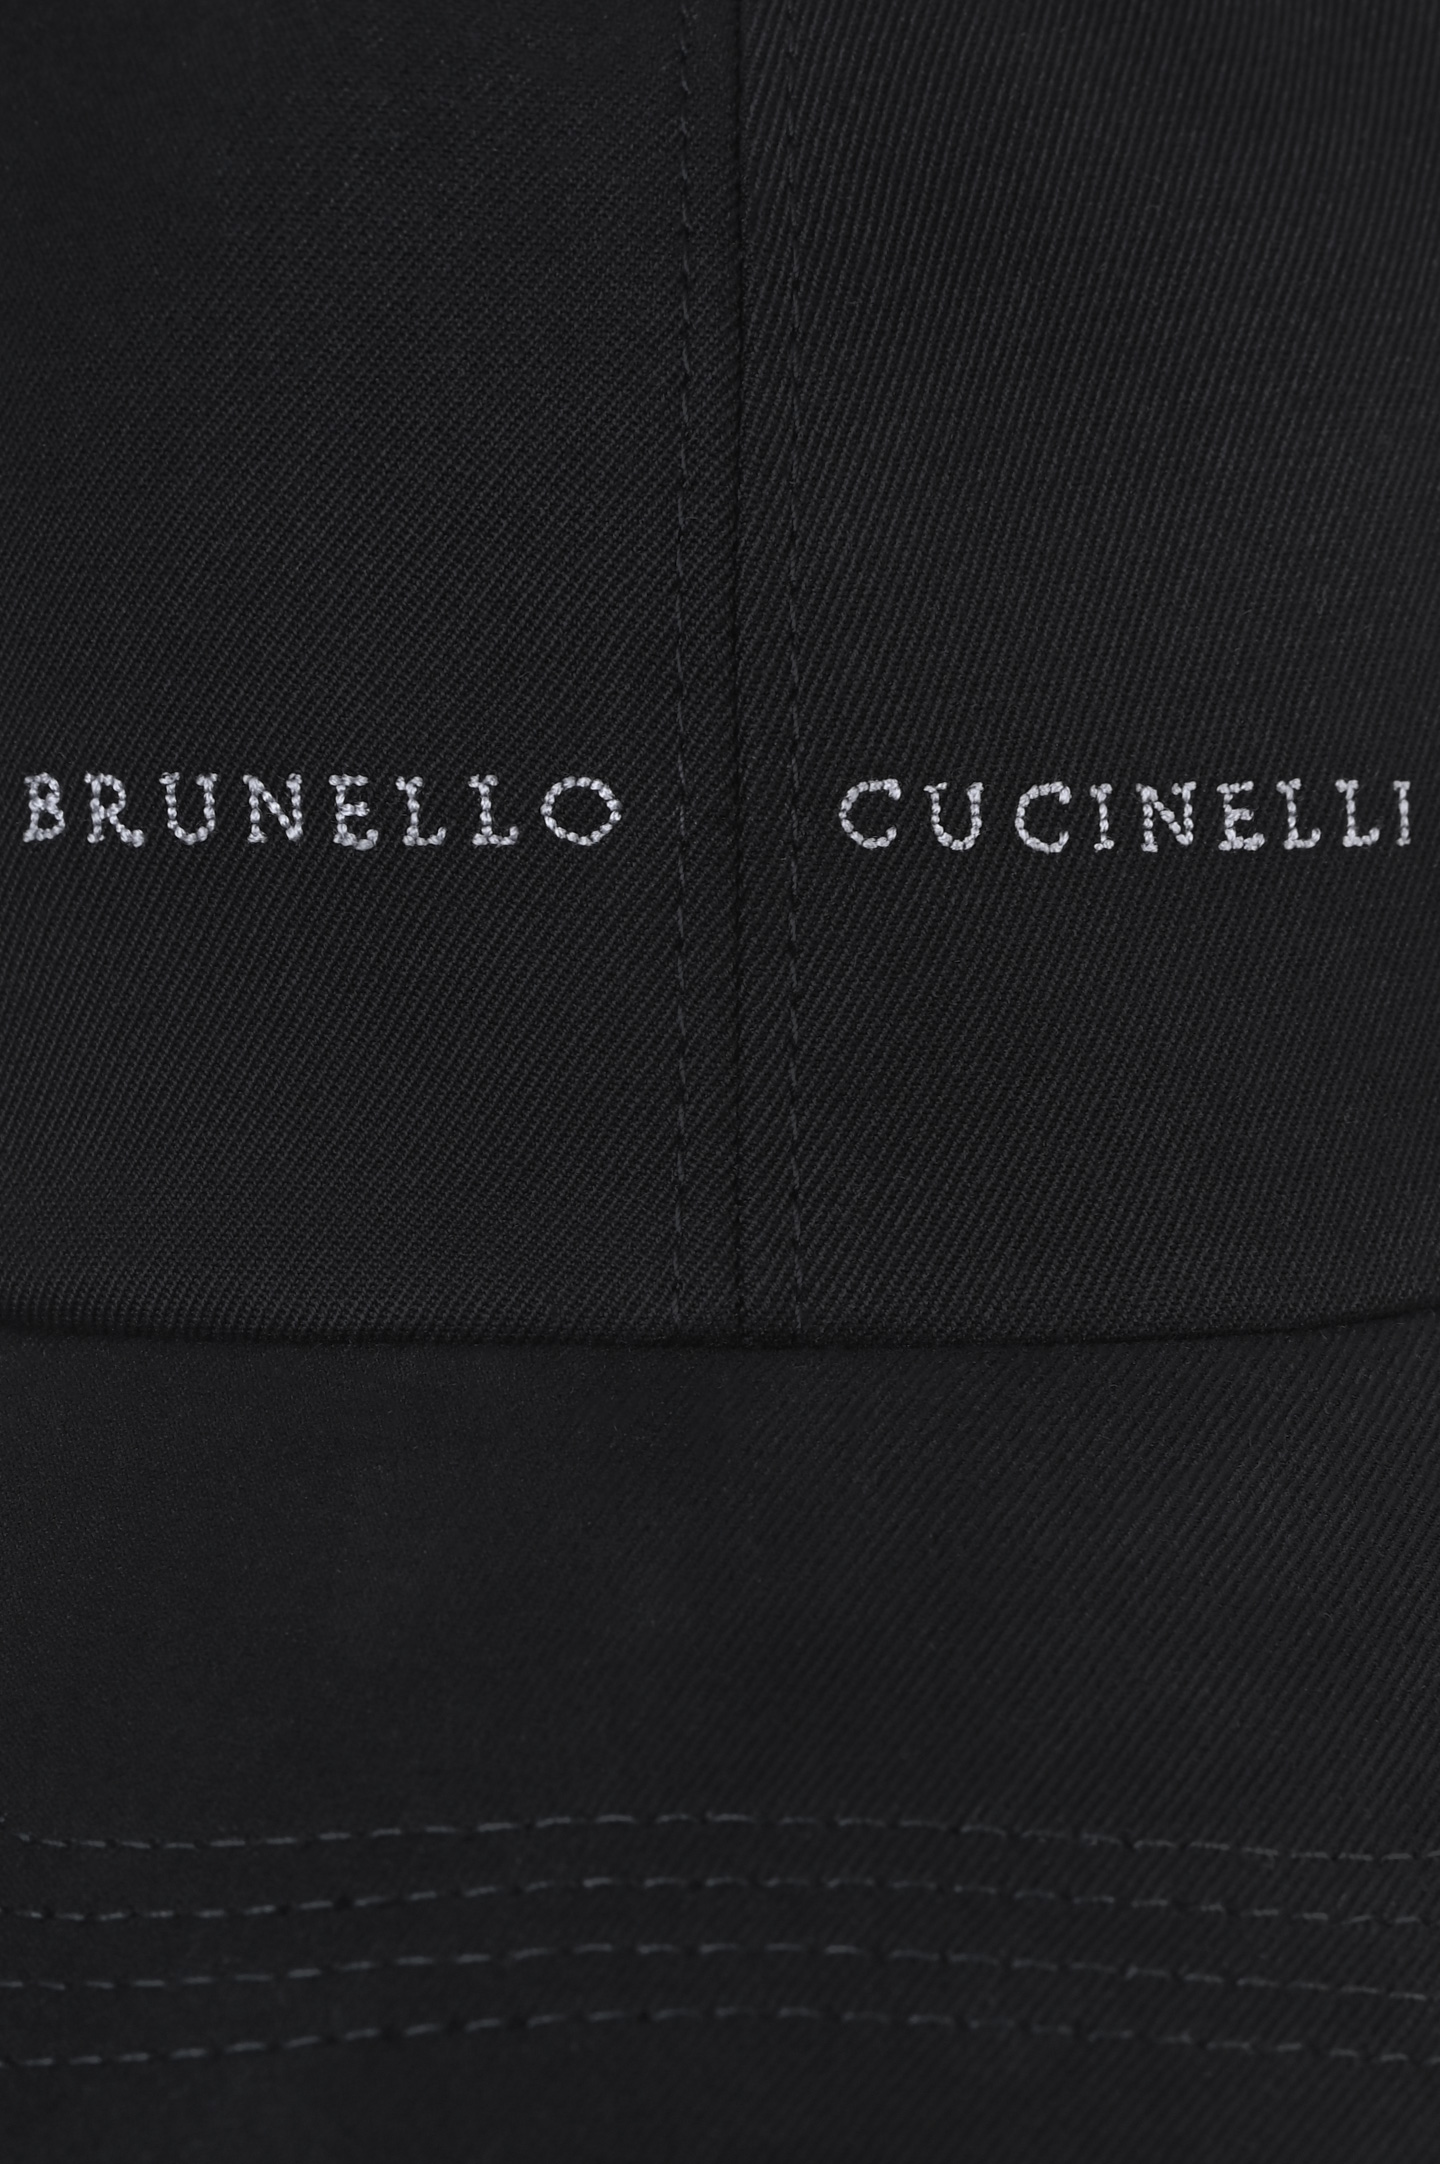 Кепка BRUNELLO  CUCINELLI M252D9977, цвет: Черный, Мужской